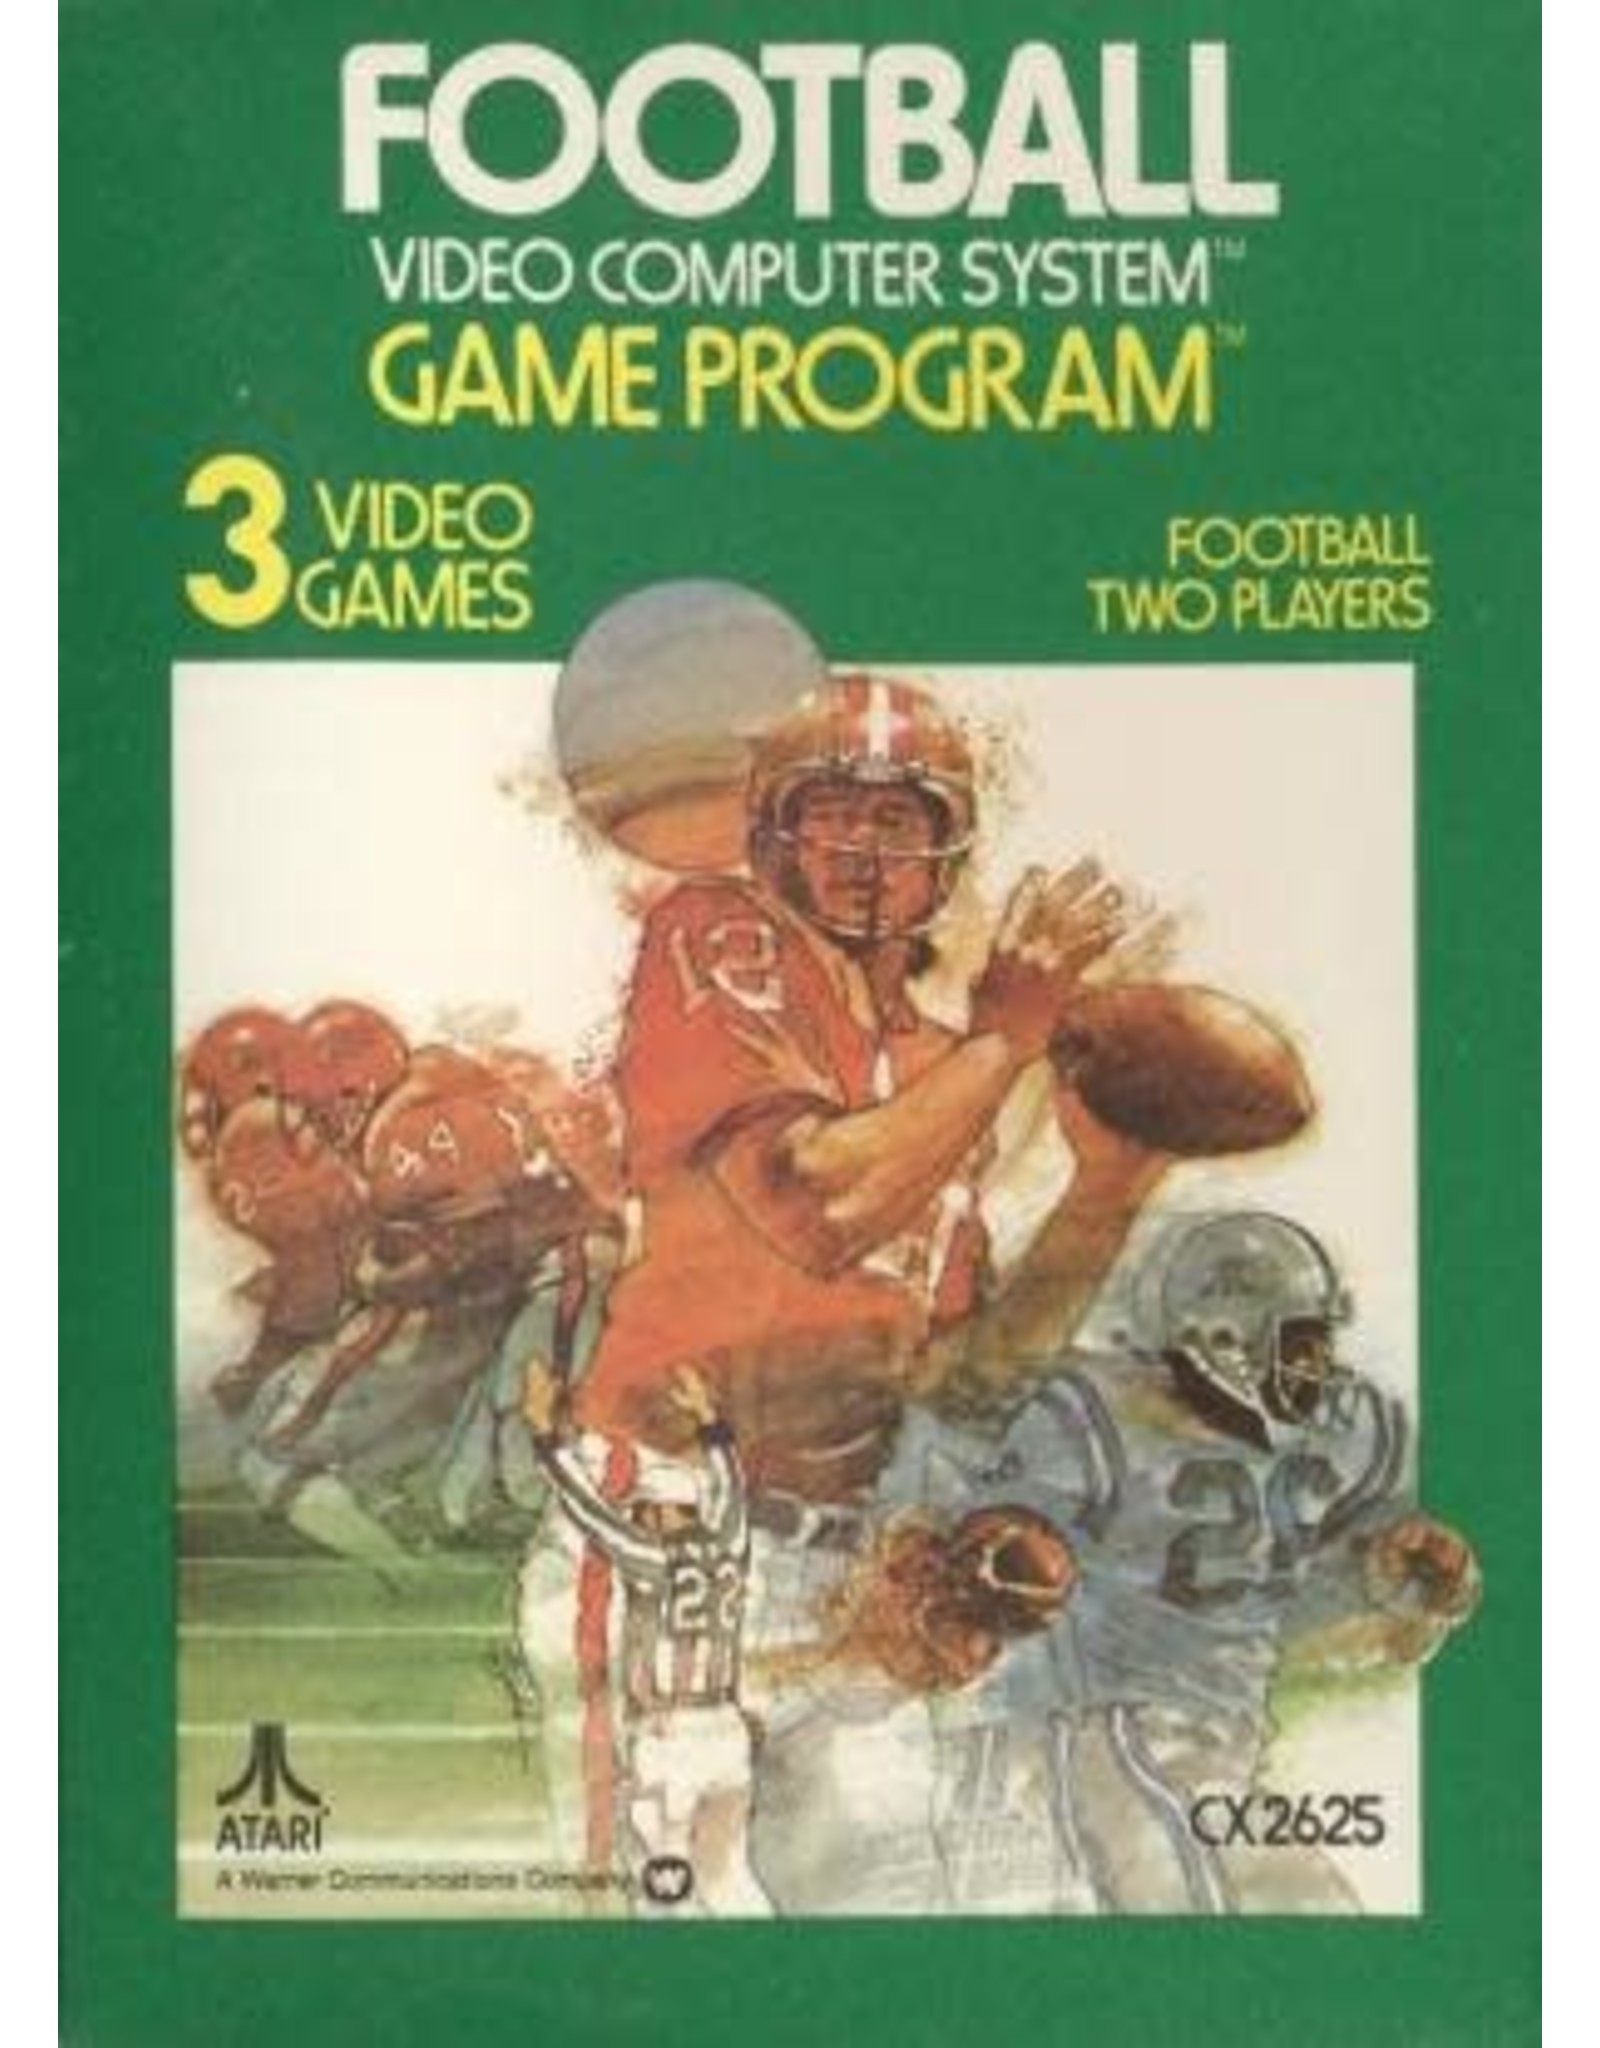 Atari 2600 Football (Cart Only)